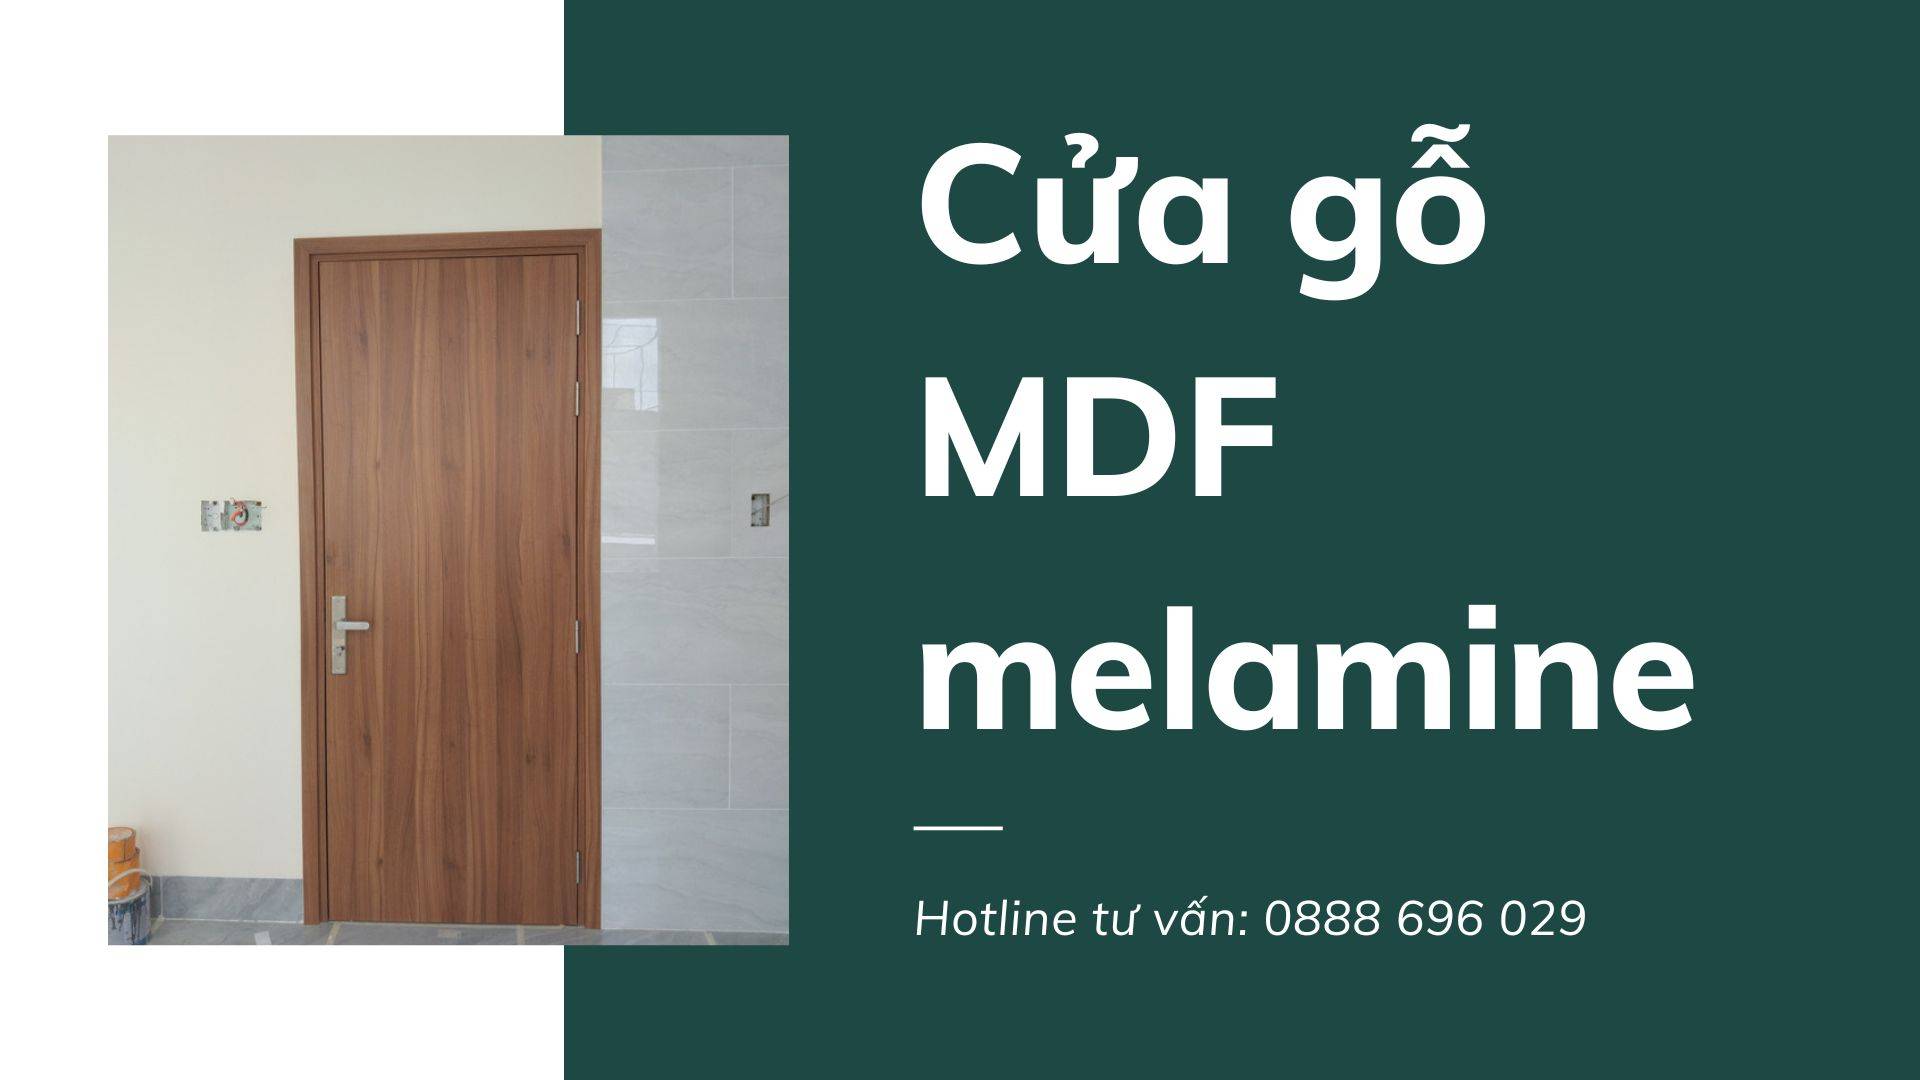 Cửa gỗ công nghiệp MDF melamine tại Bến Tre | An Cường